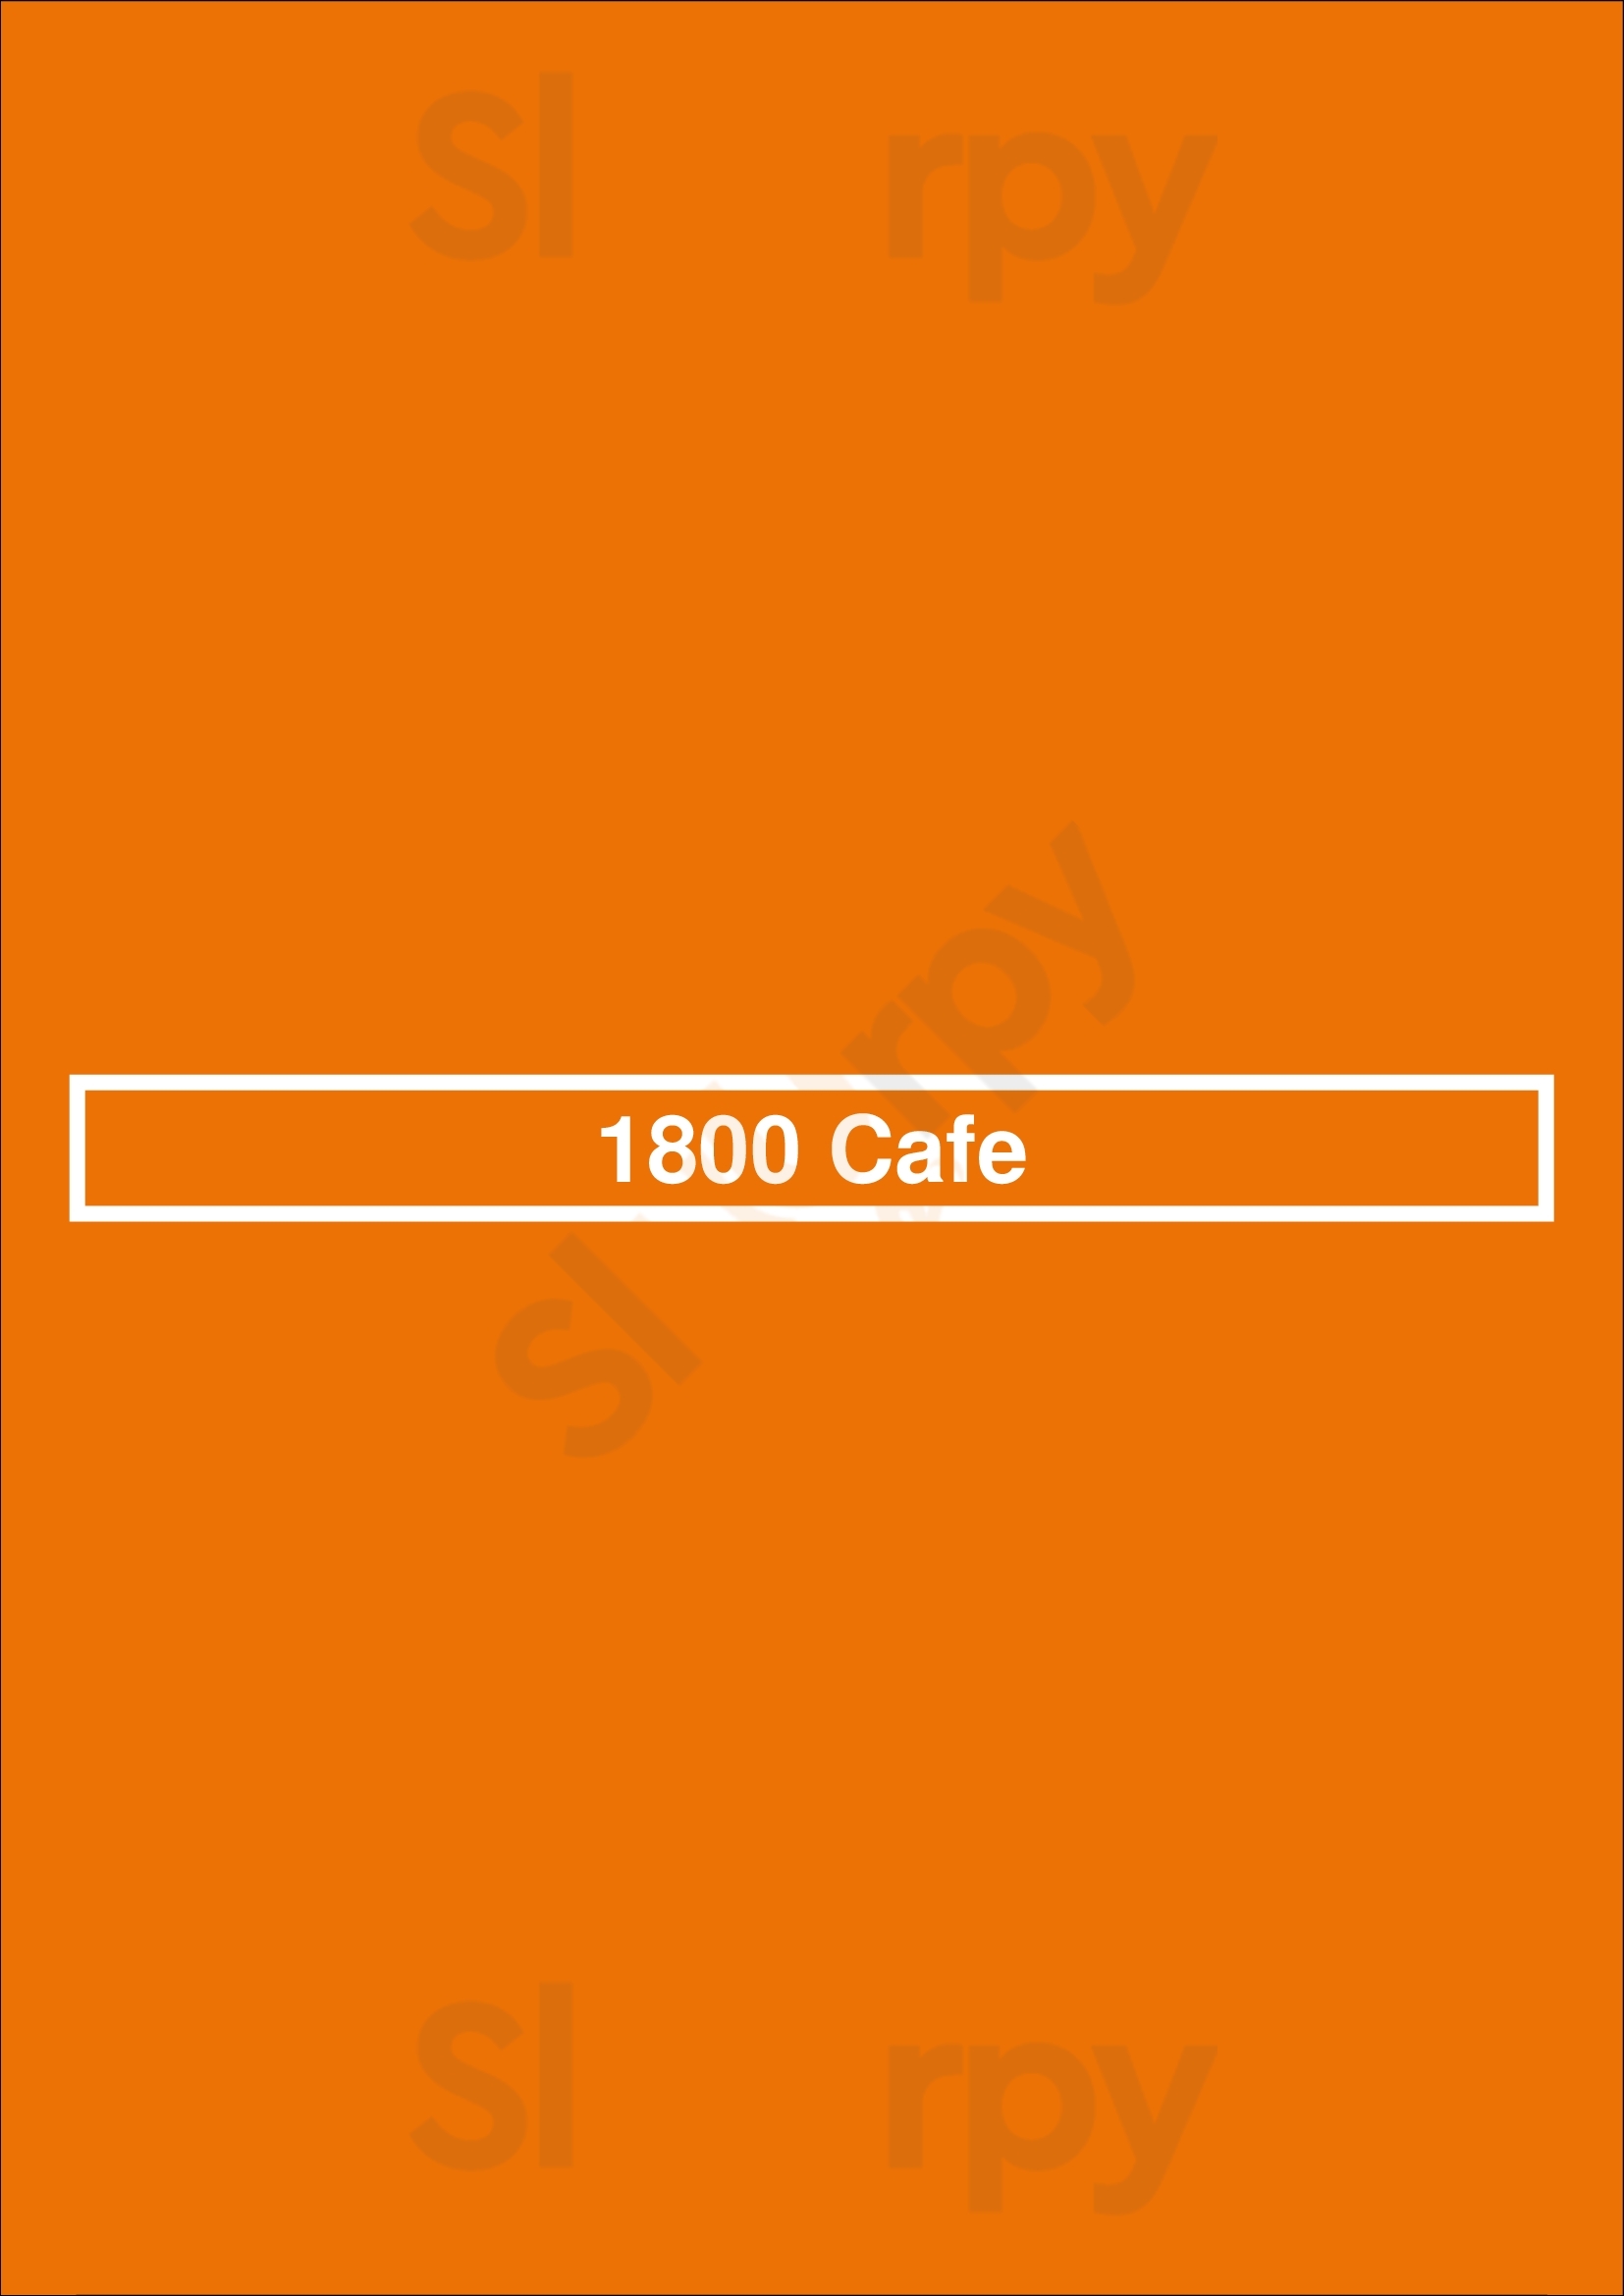 1800 Cafe Concord Menu - 1